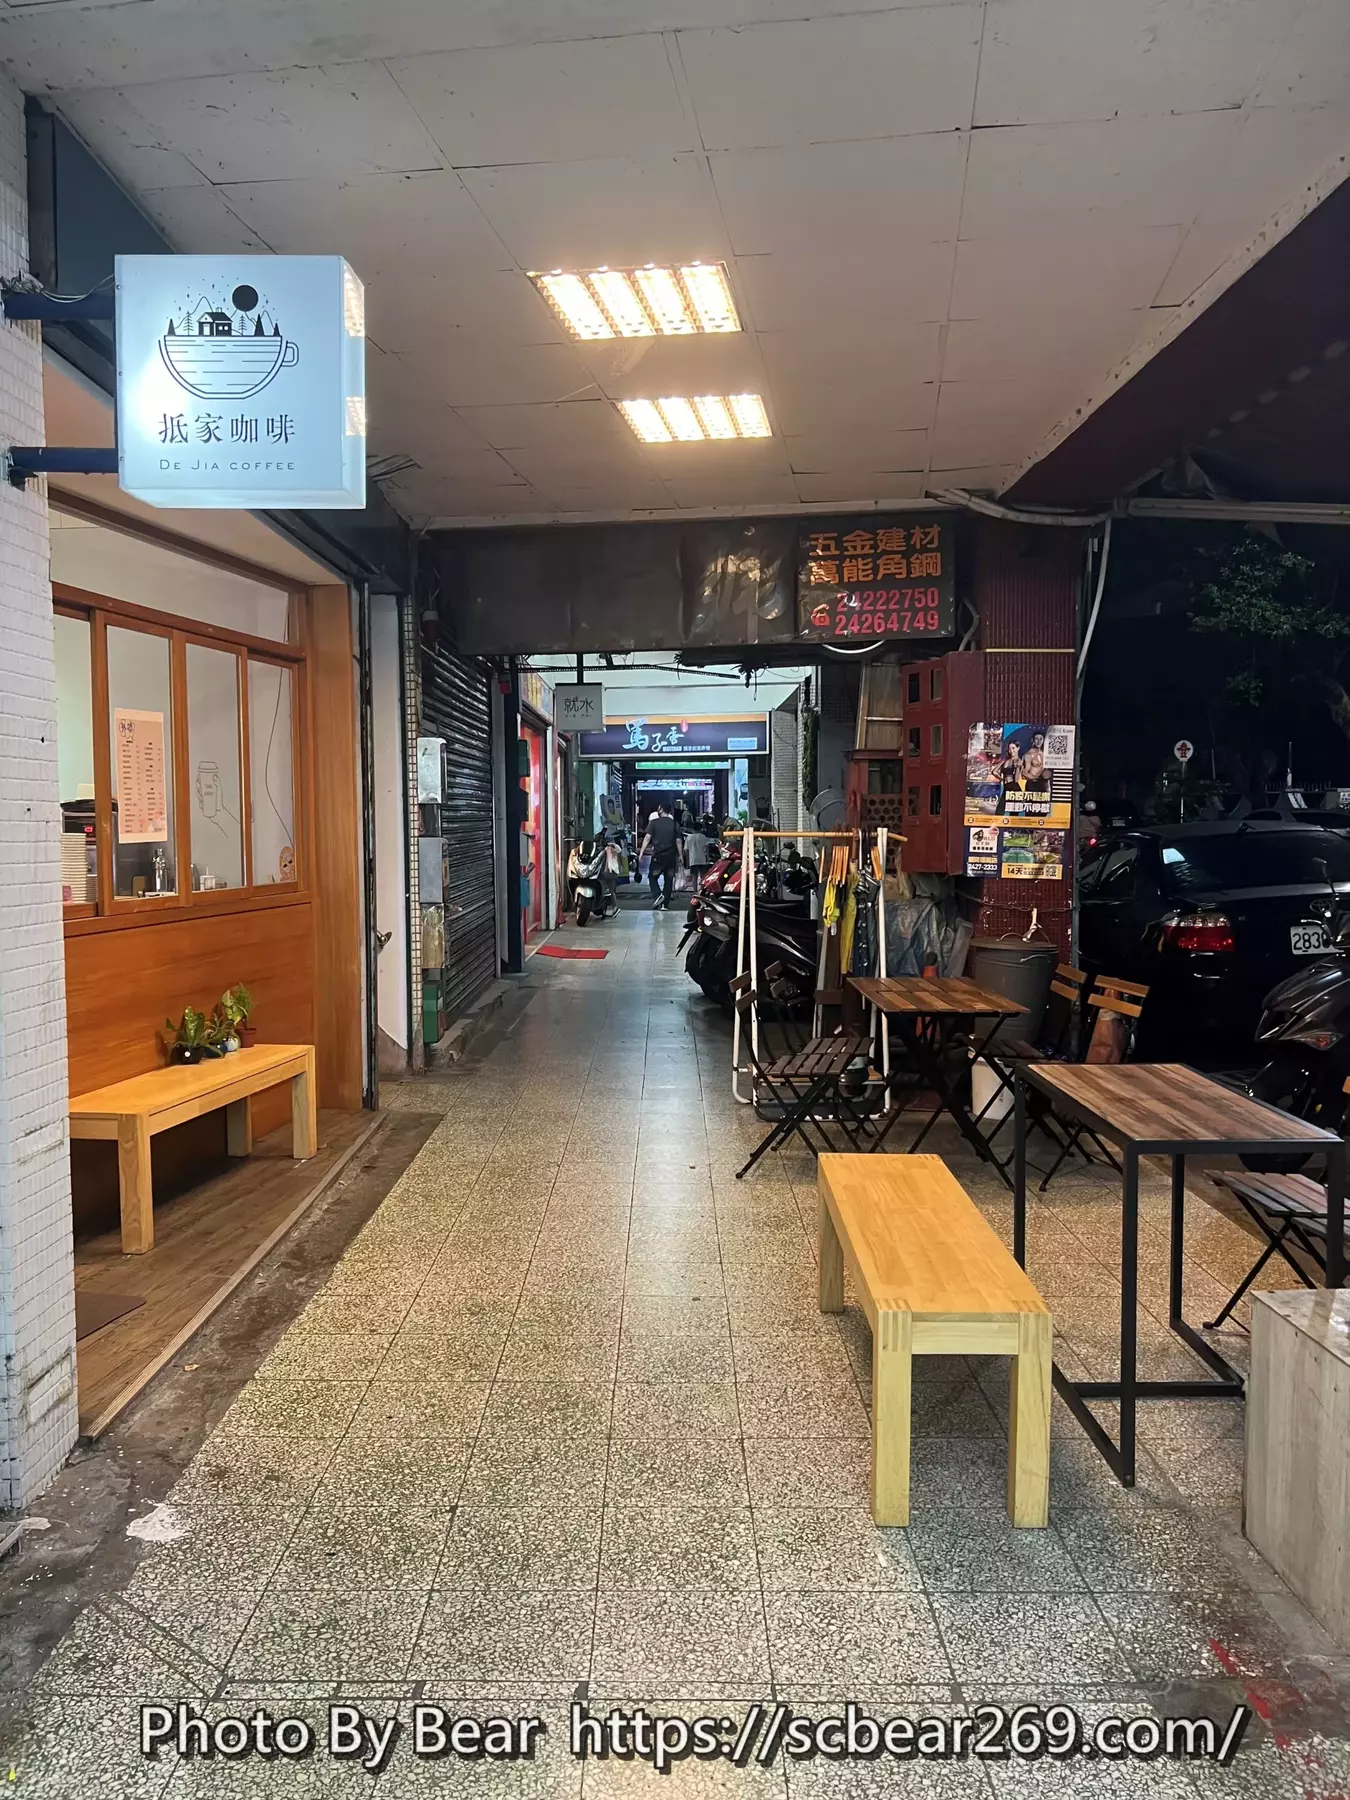 【基隆】「抵家咖啡De Jia Coffee．營業到晚上9點的貓咪咖啡館，多樣化甜點.輕食.早午餐，還有超吸睛的鳥巢昭和布丁」